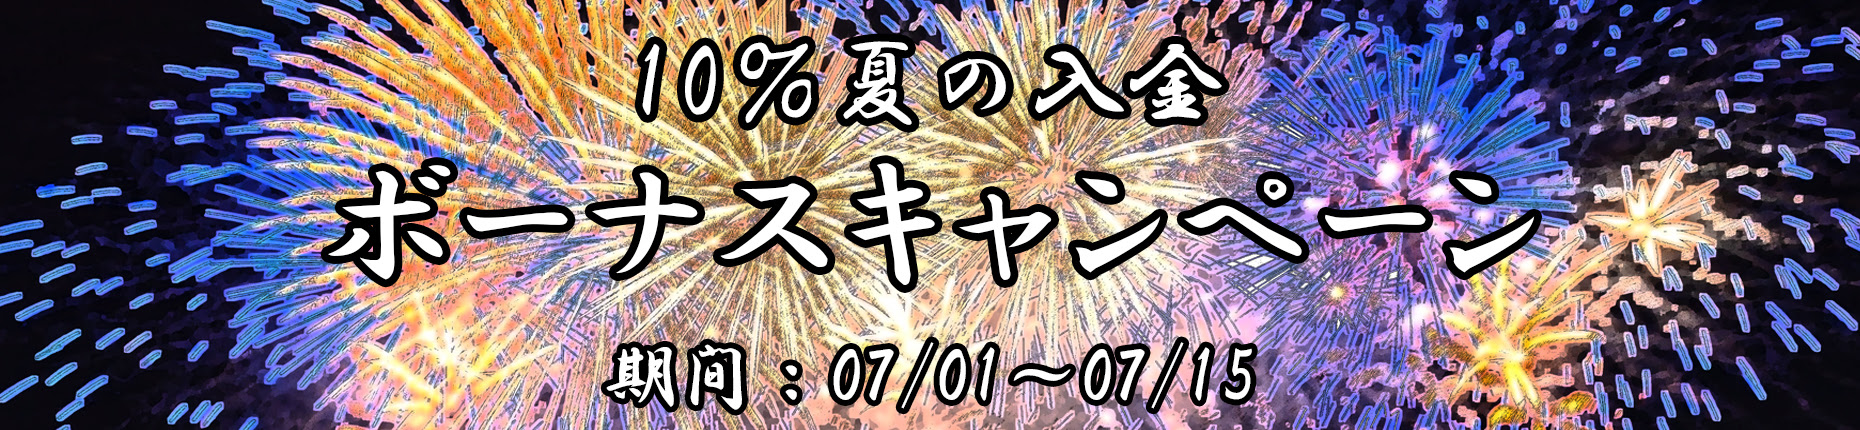 【FXDD】真夏の10%入金ボーナスキャンペーン【延長中】